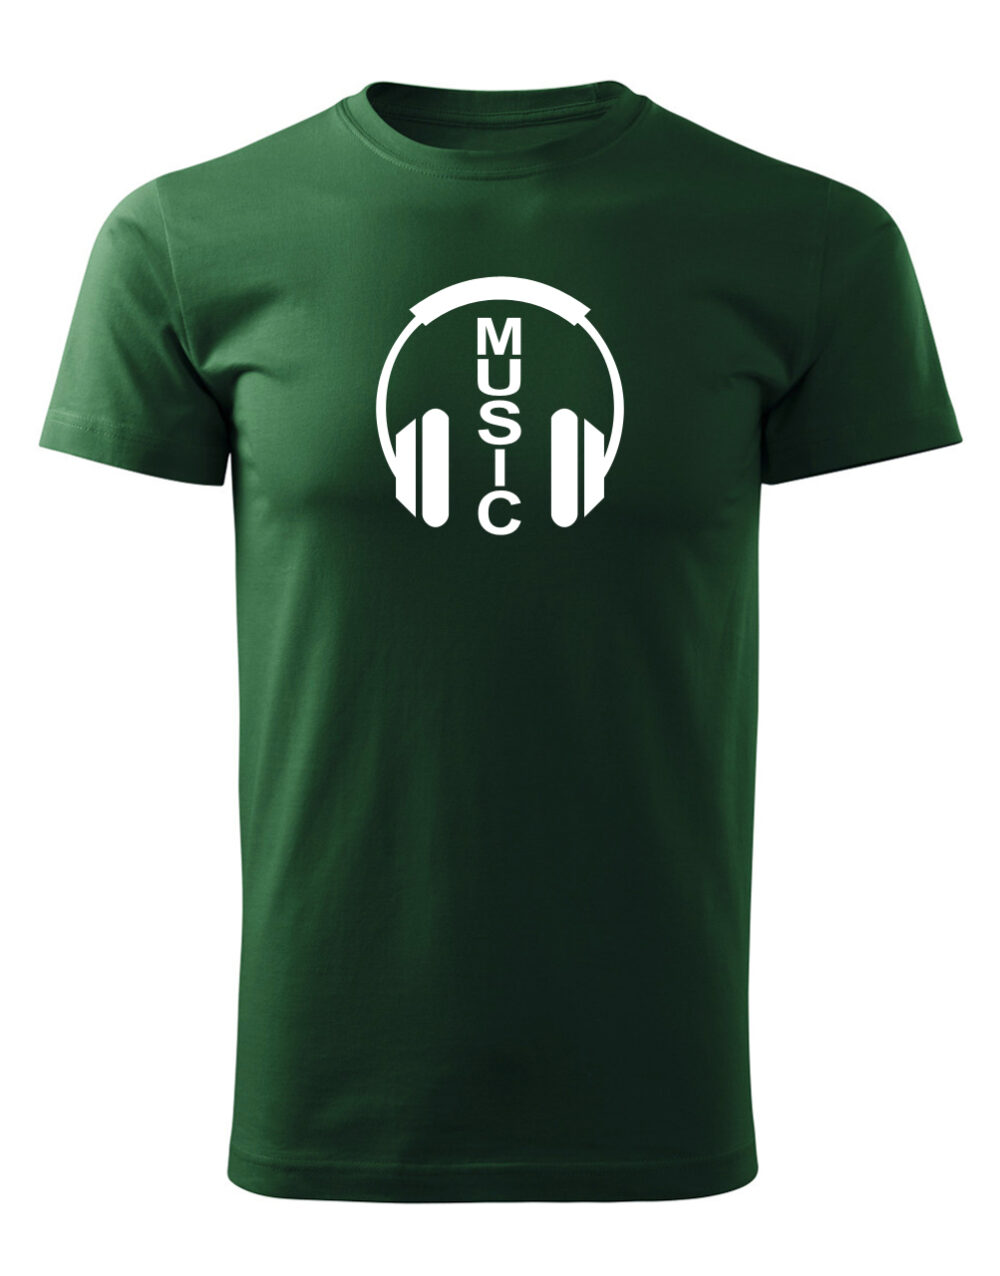 Pánské tričko s potiskem Music lahvově zelená